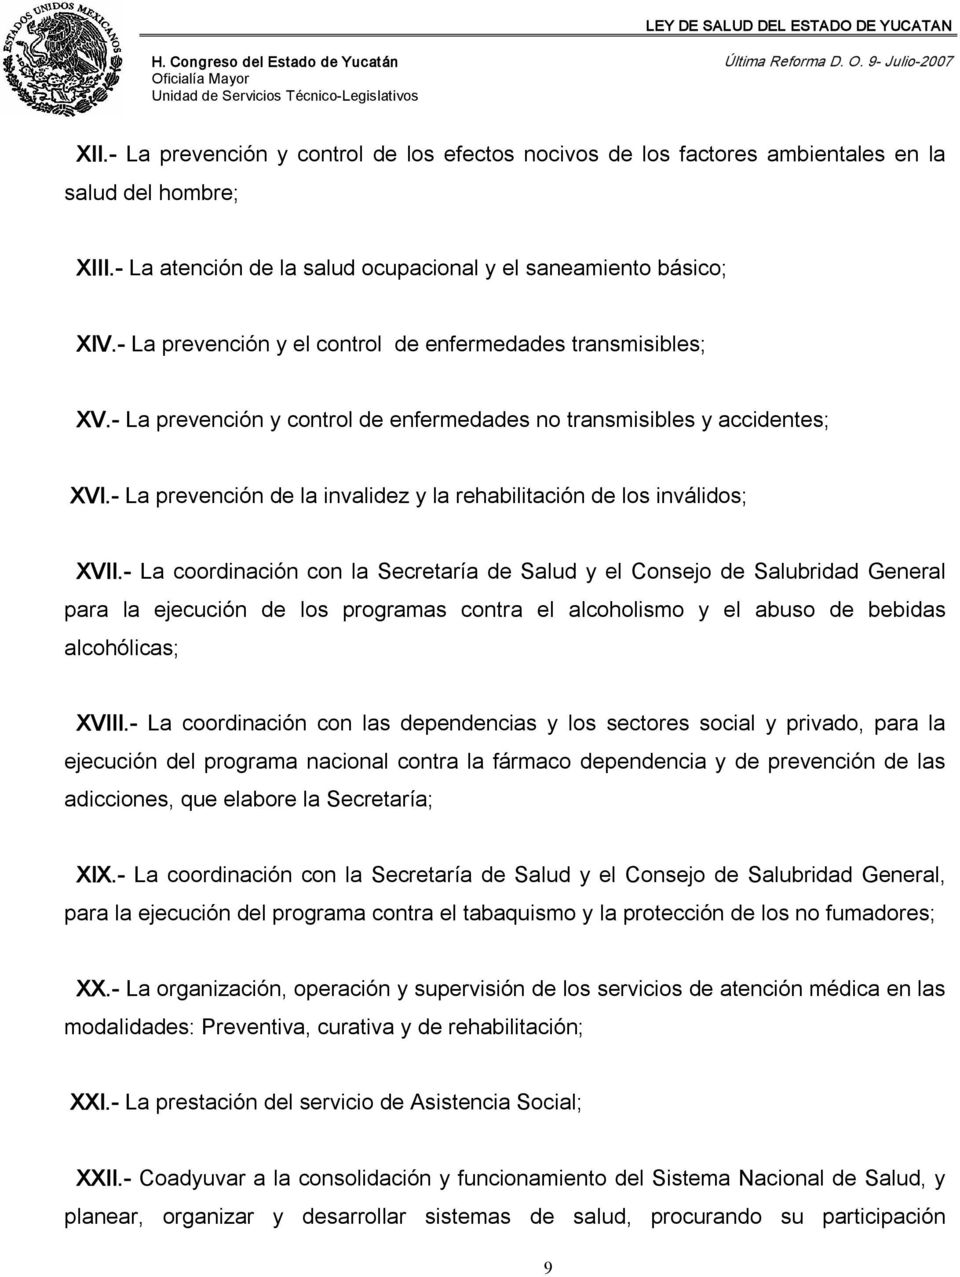 La prevención de la invalidez y la rehabilitación de los inválidos; XVII.